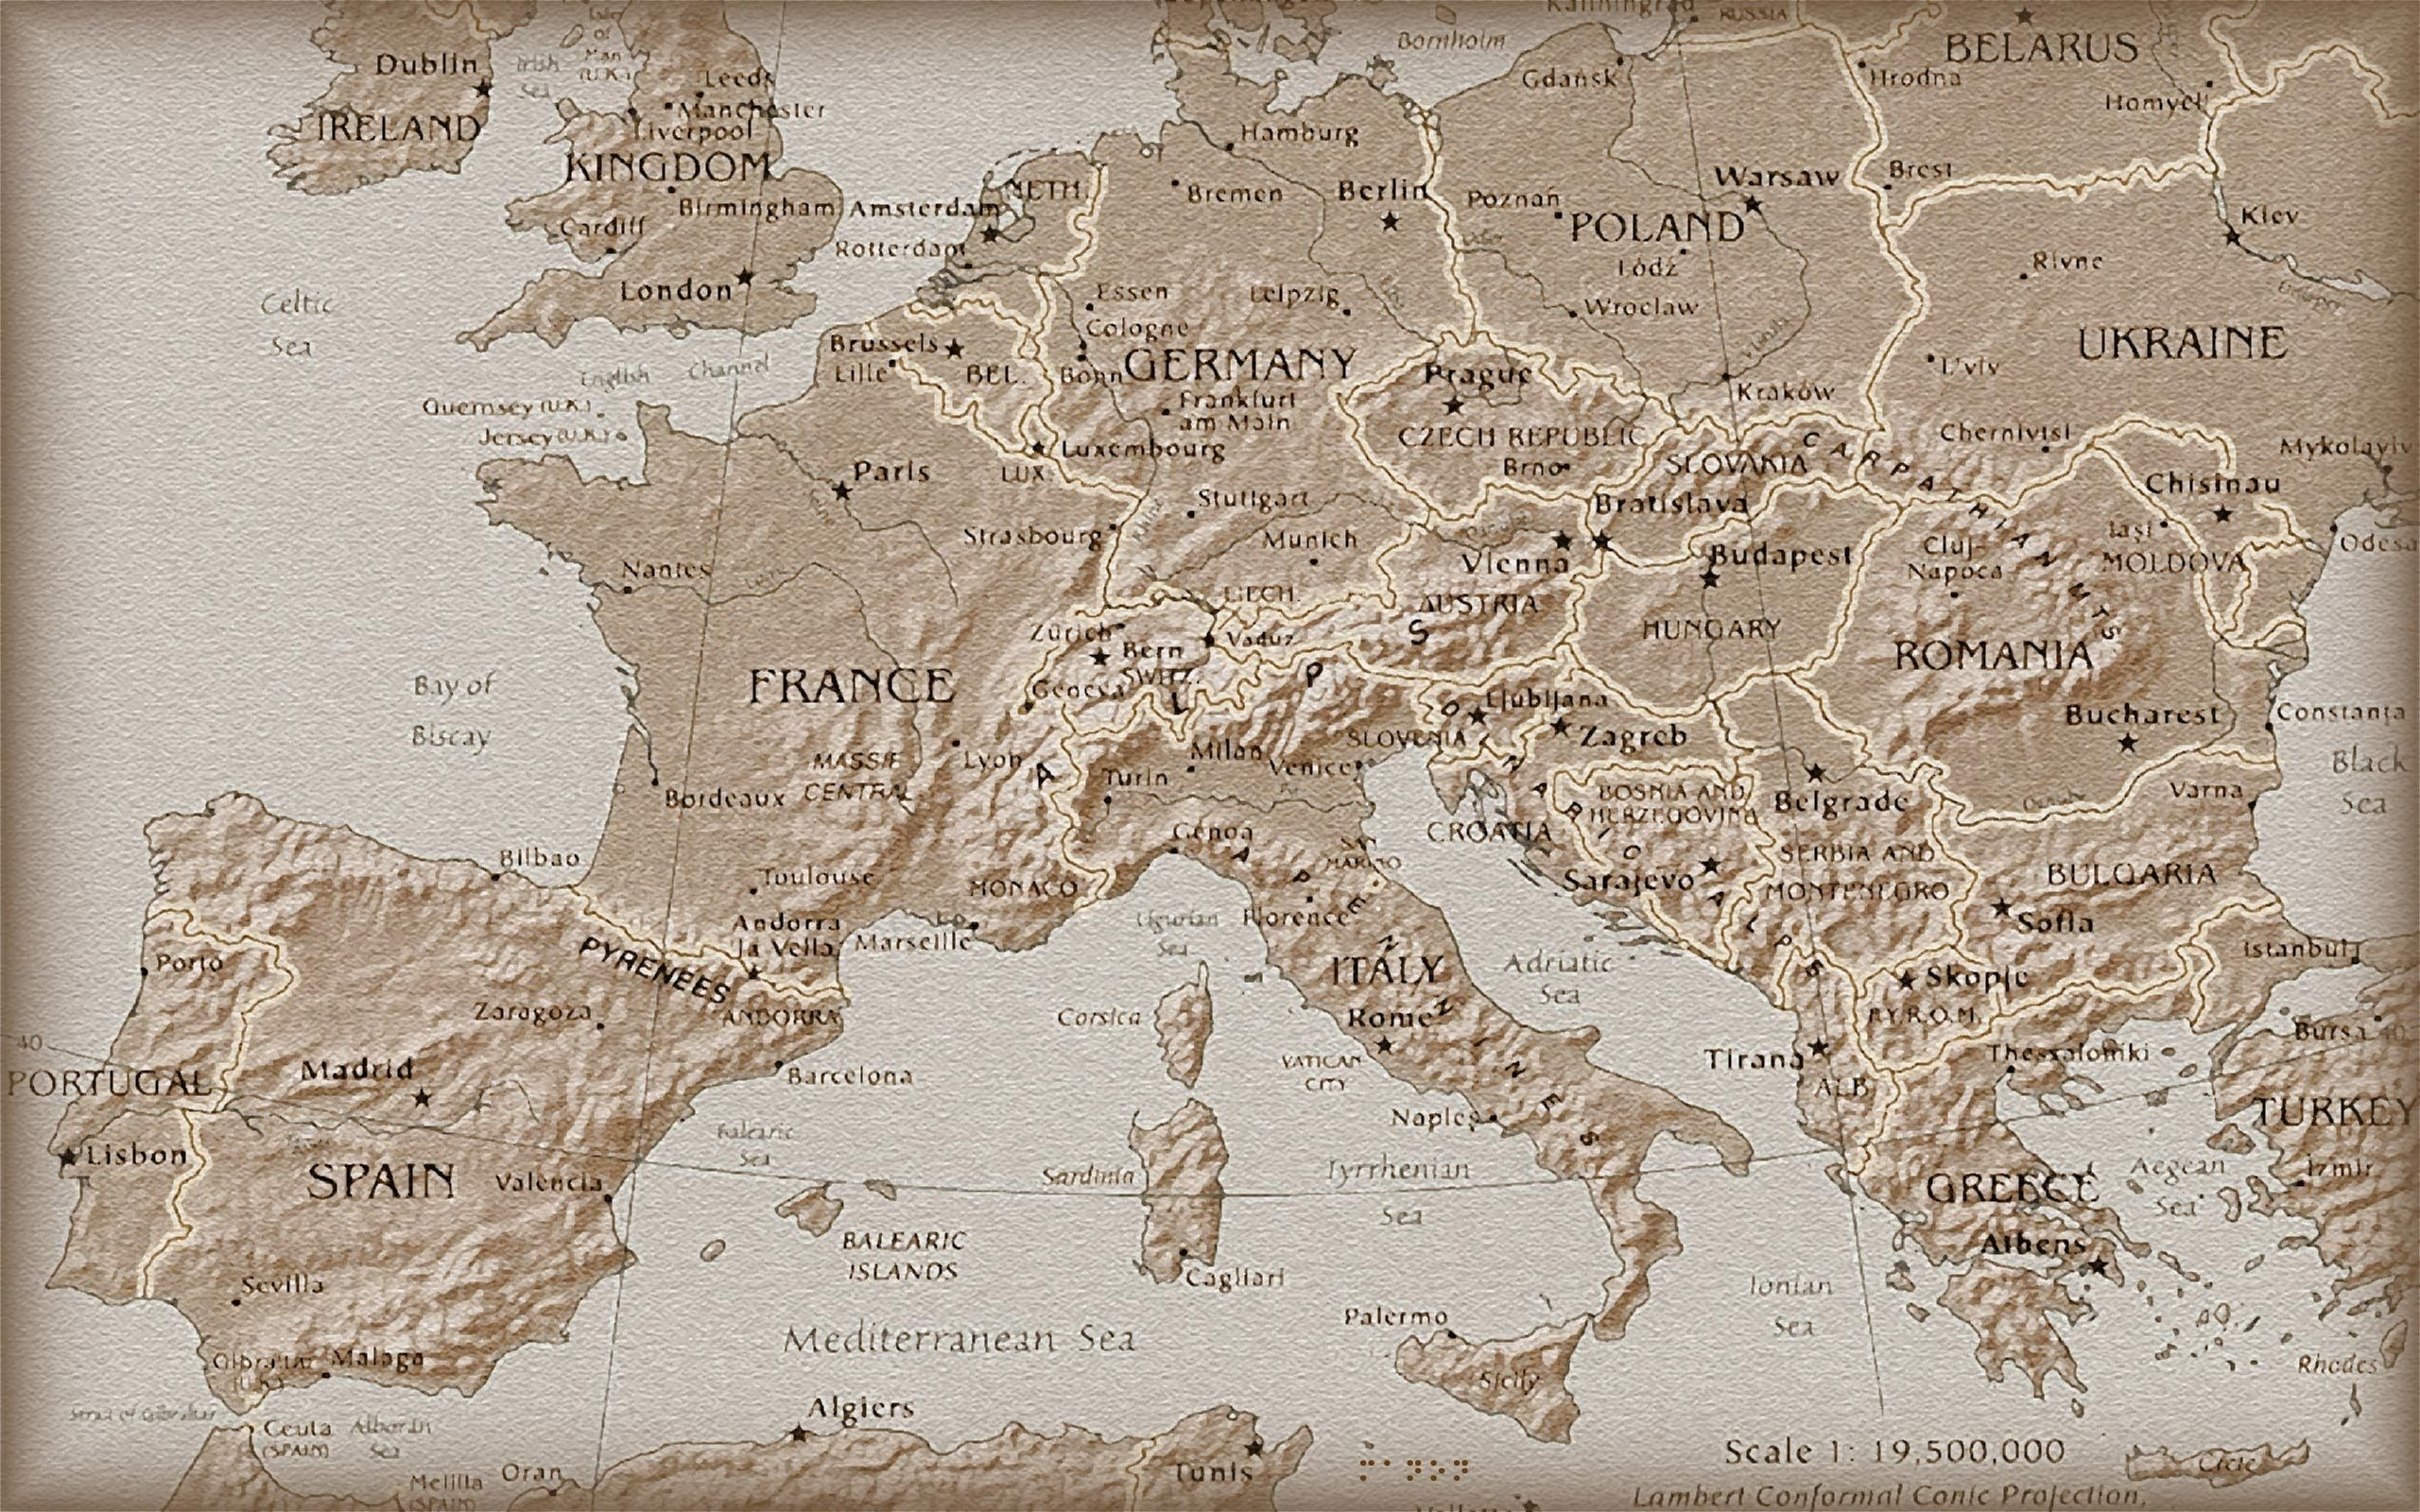 карта, вид сверху, европа, под старину